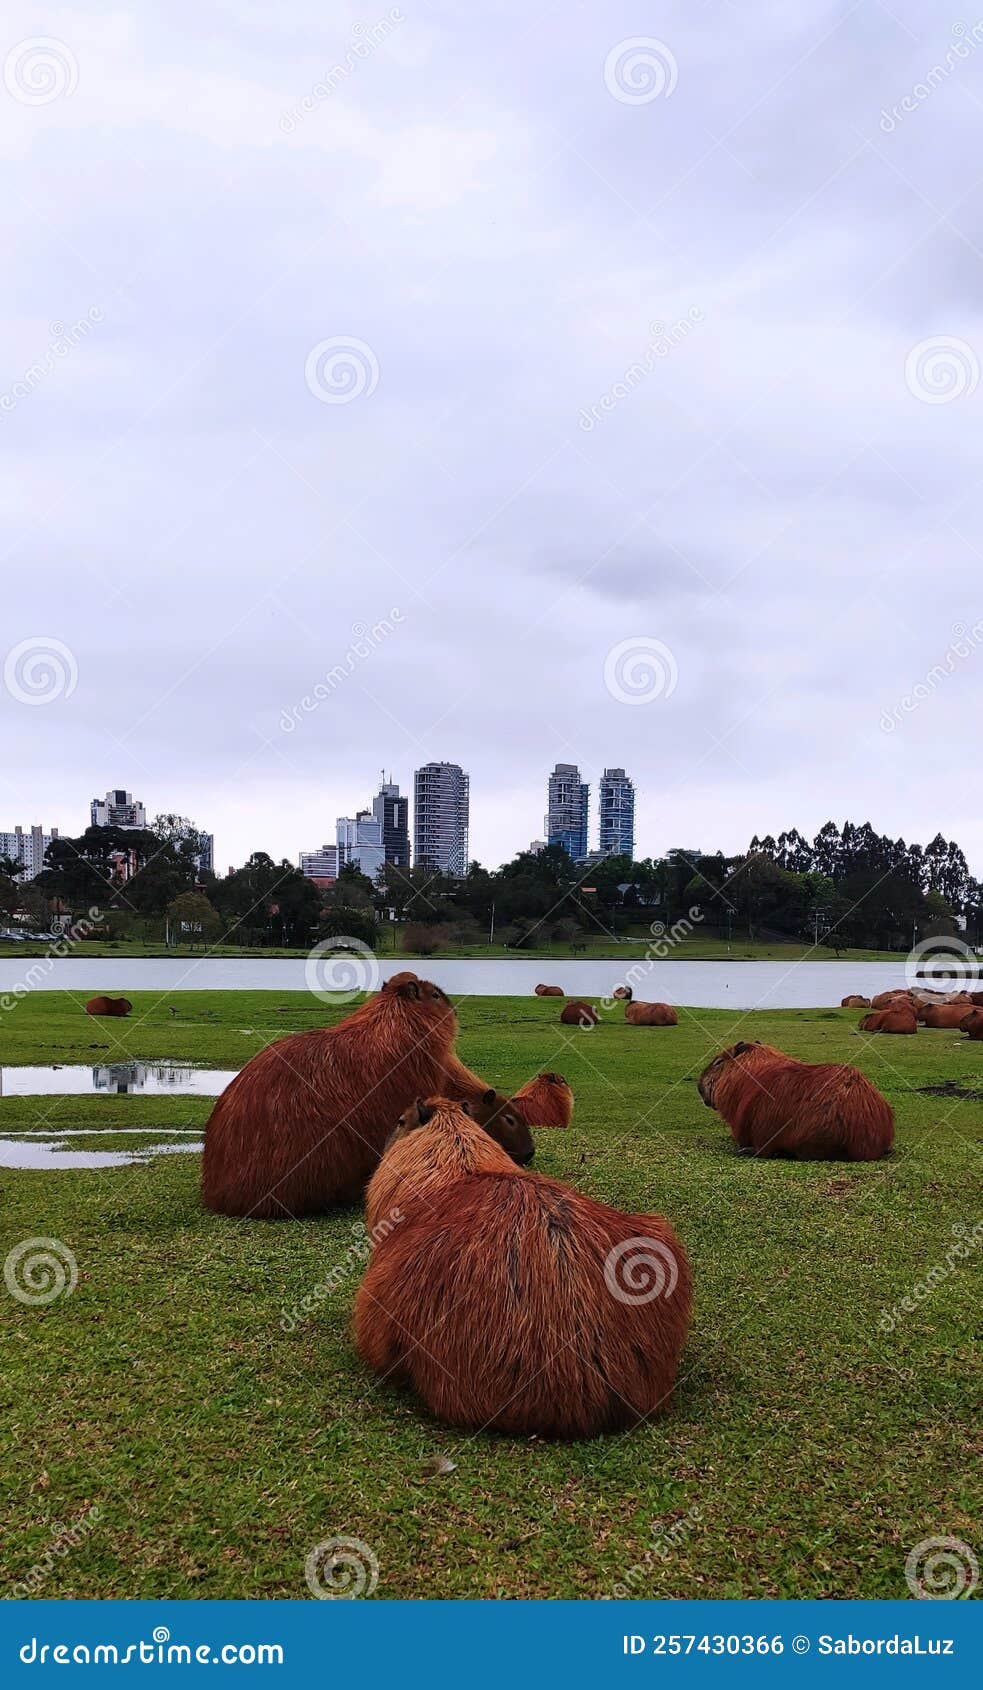 capybaras looking at city